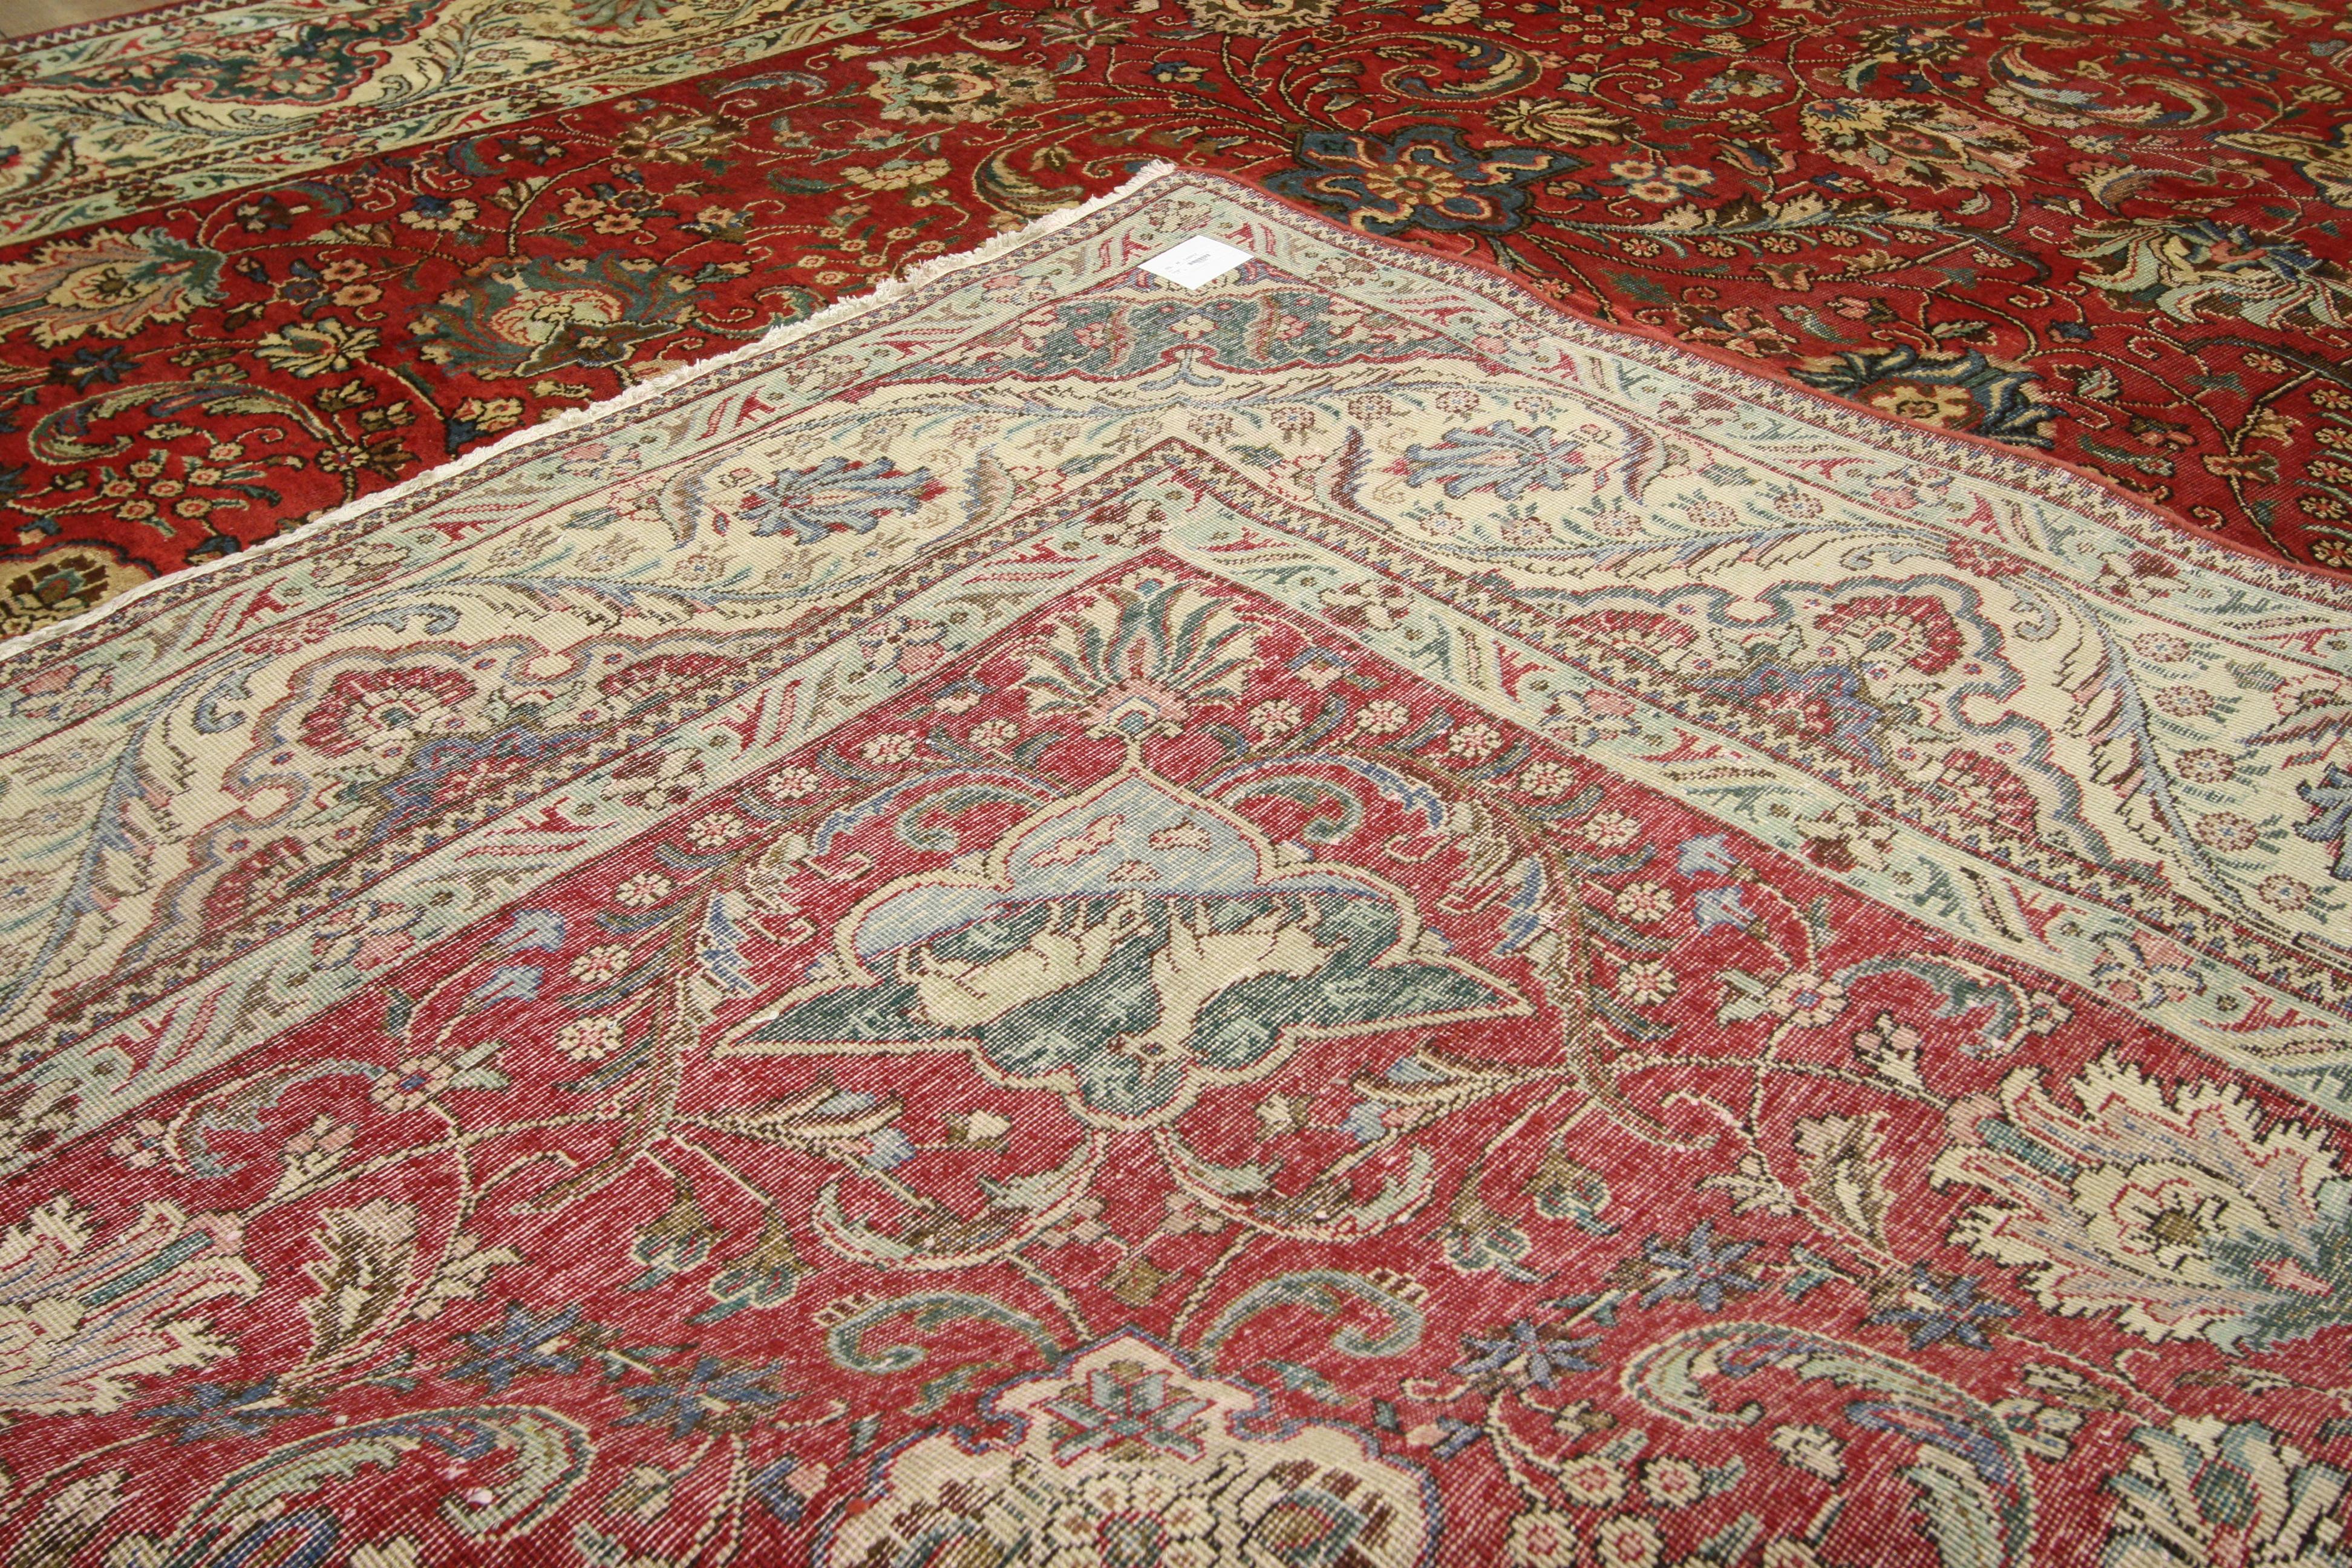 76280 Tapis Persan Vintage Tabriz de style colonial et fédéral traditionnel. Ce tapis Persan Tabriz vintage en laine nouée à la main présente un motif all-over entouré d'une bordure classique, créant un design équilibré et intemporel. Ce tapis